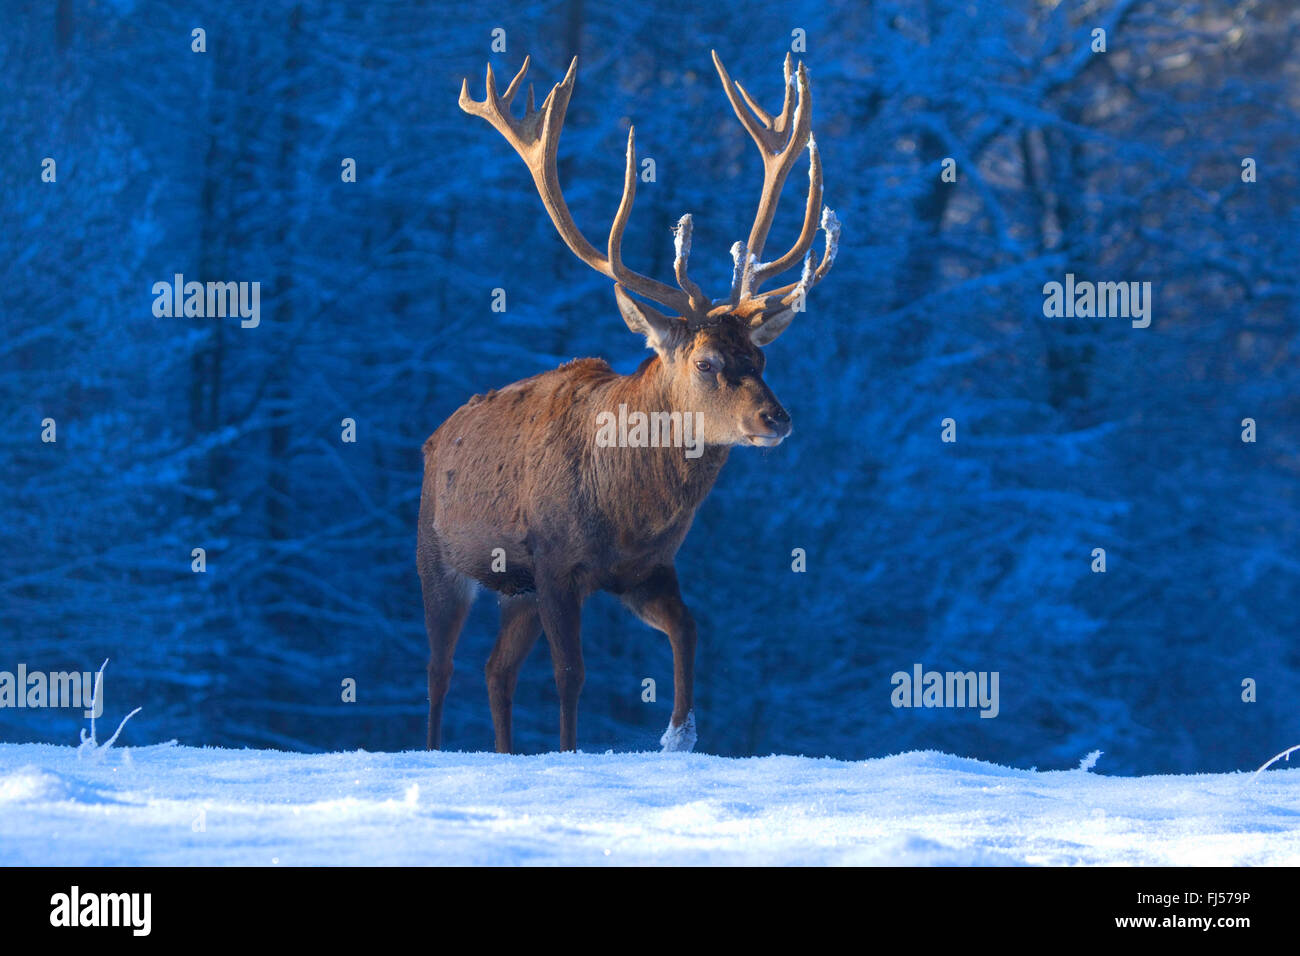 red deer (Cervus elaphus), stag in winter, Germany, North Rhine-Westphalia Stock Photo